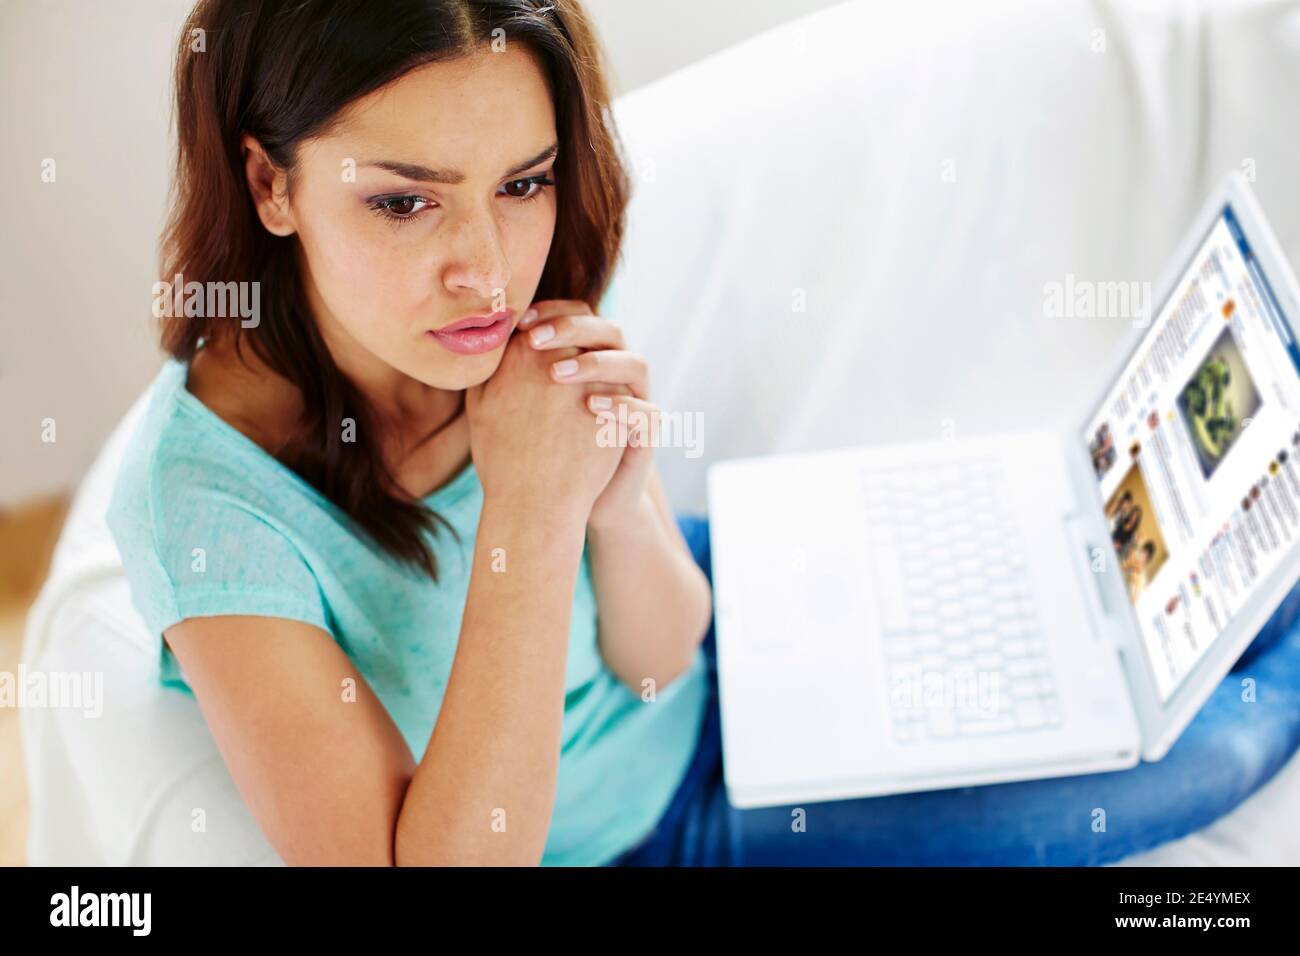 Besorgt aussehende Frau mit Laptop Stockfoto